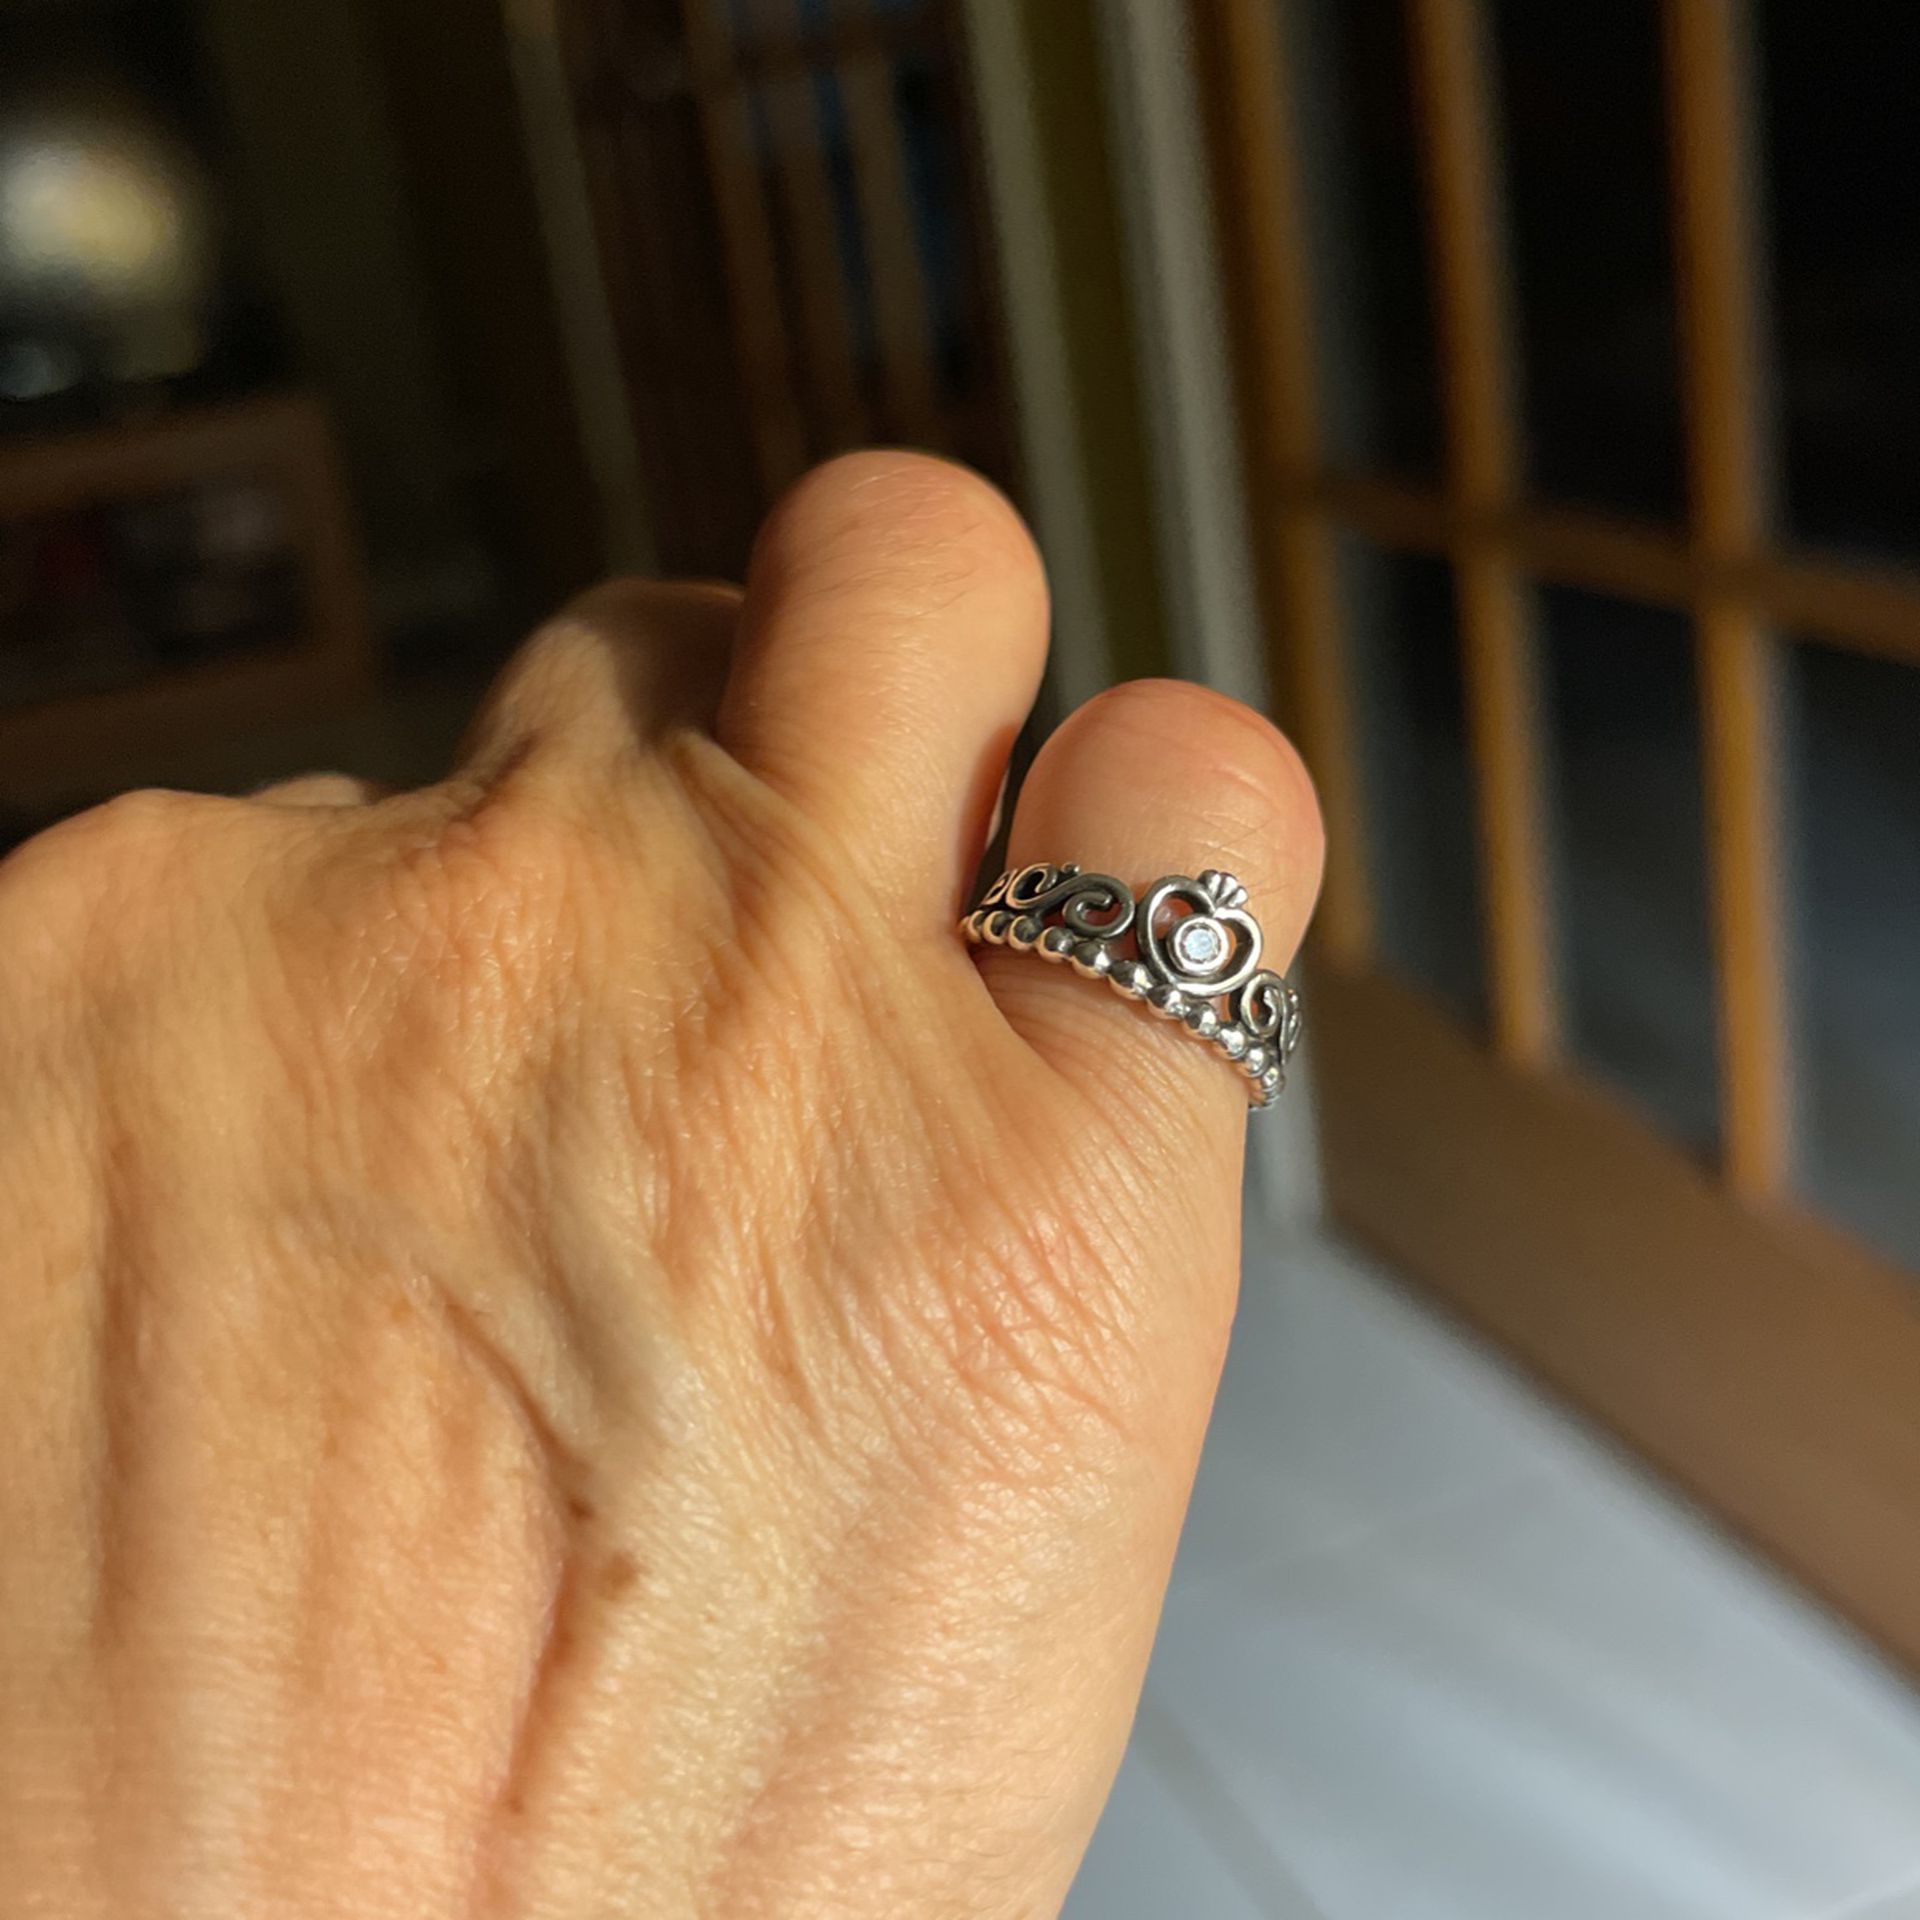 Tiara Pinkie Ring With Solitaire Diamond!